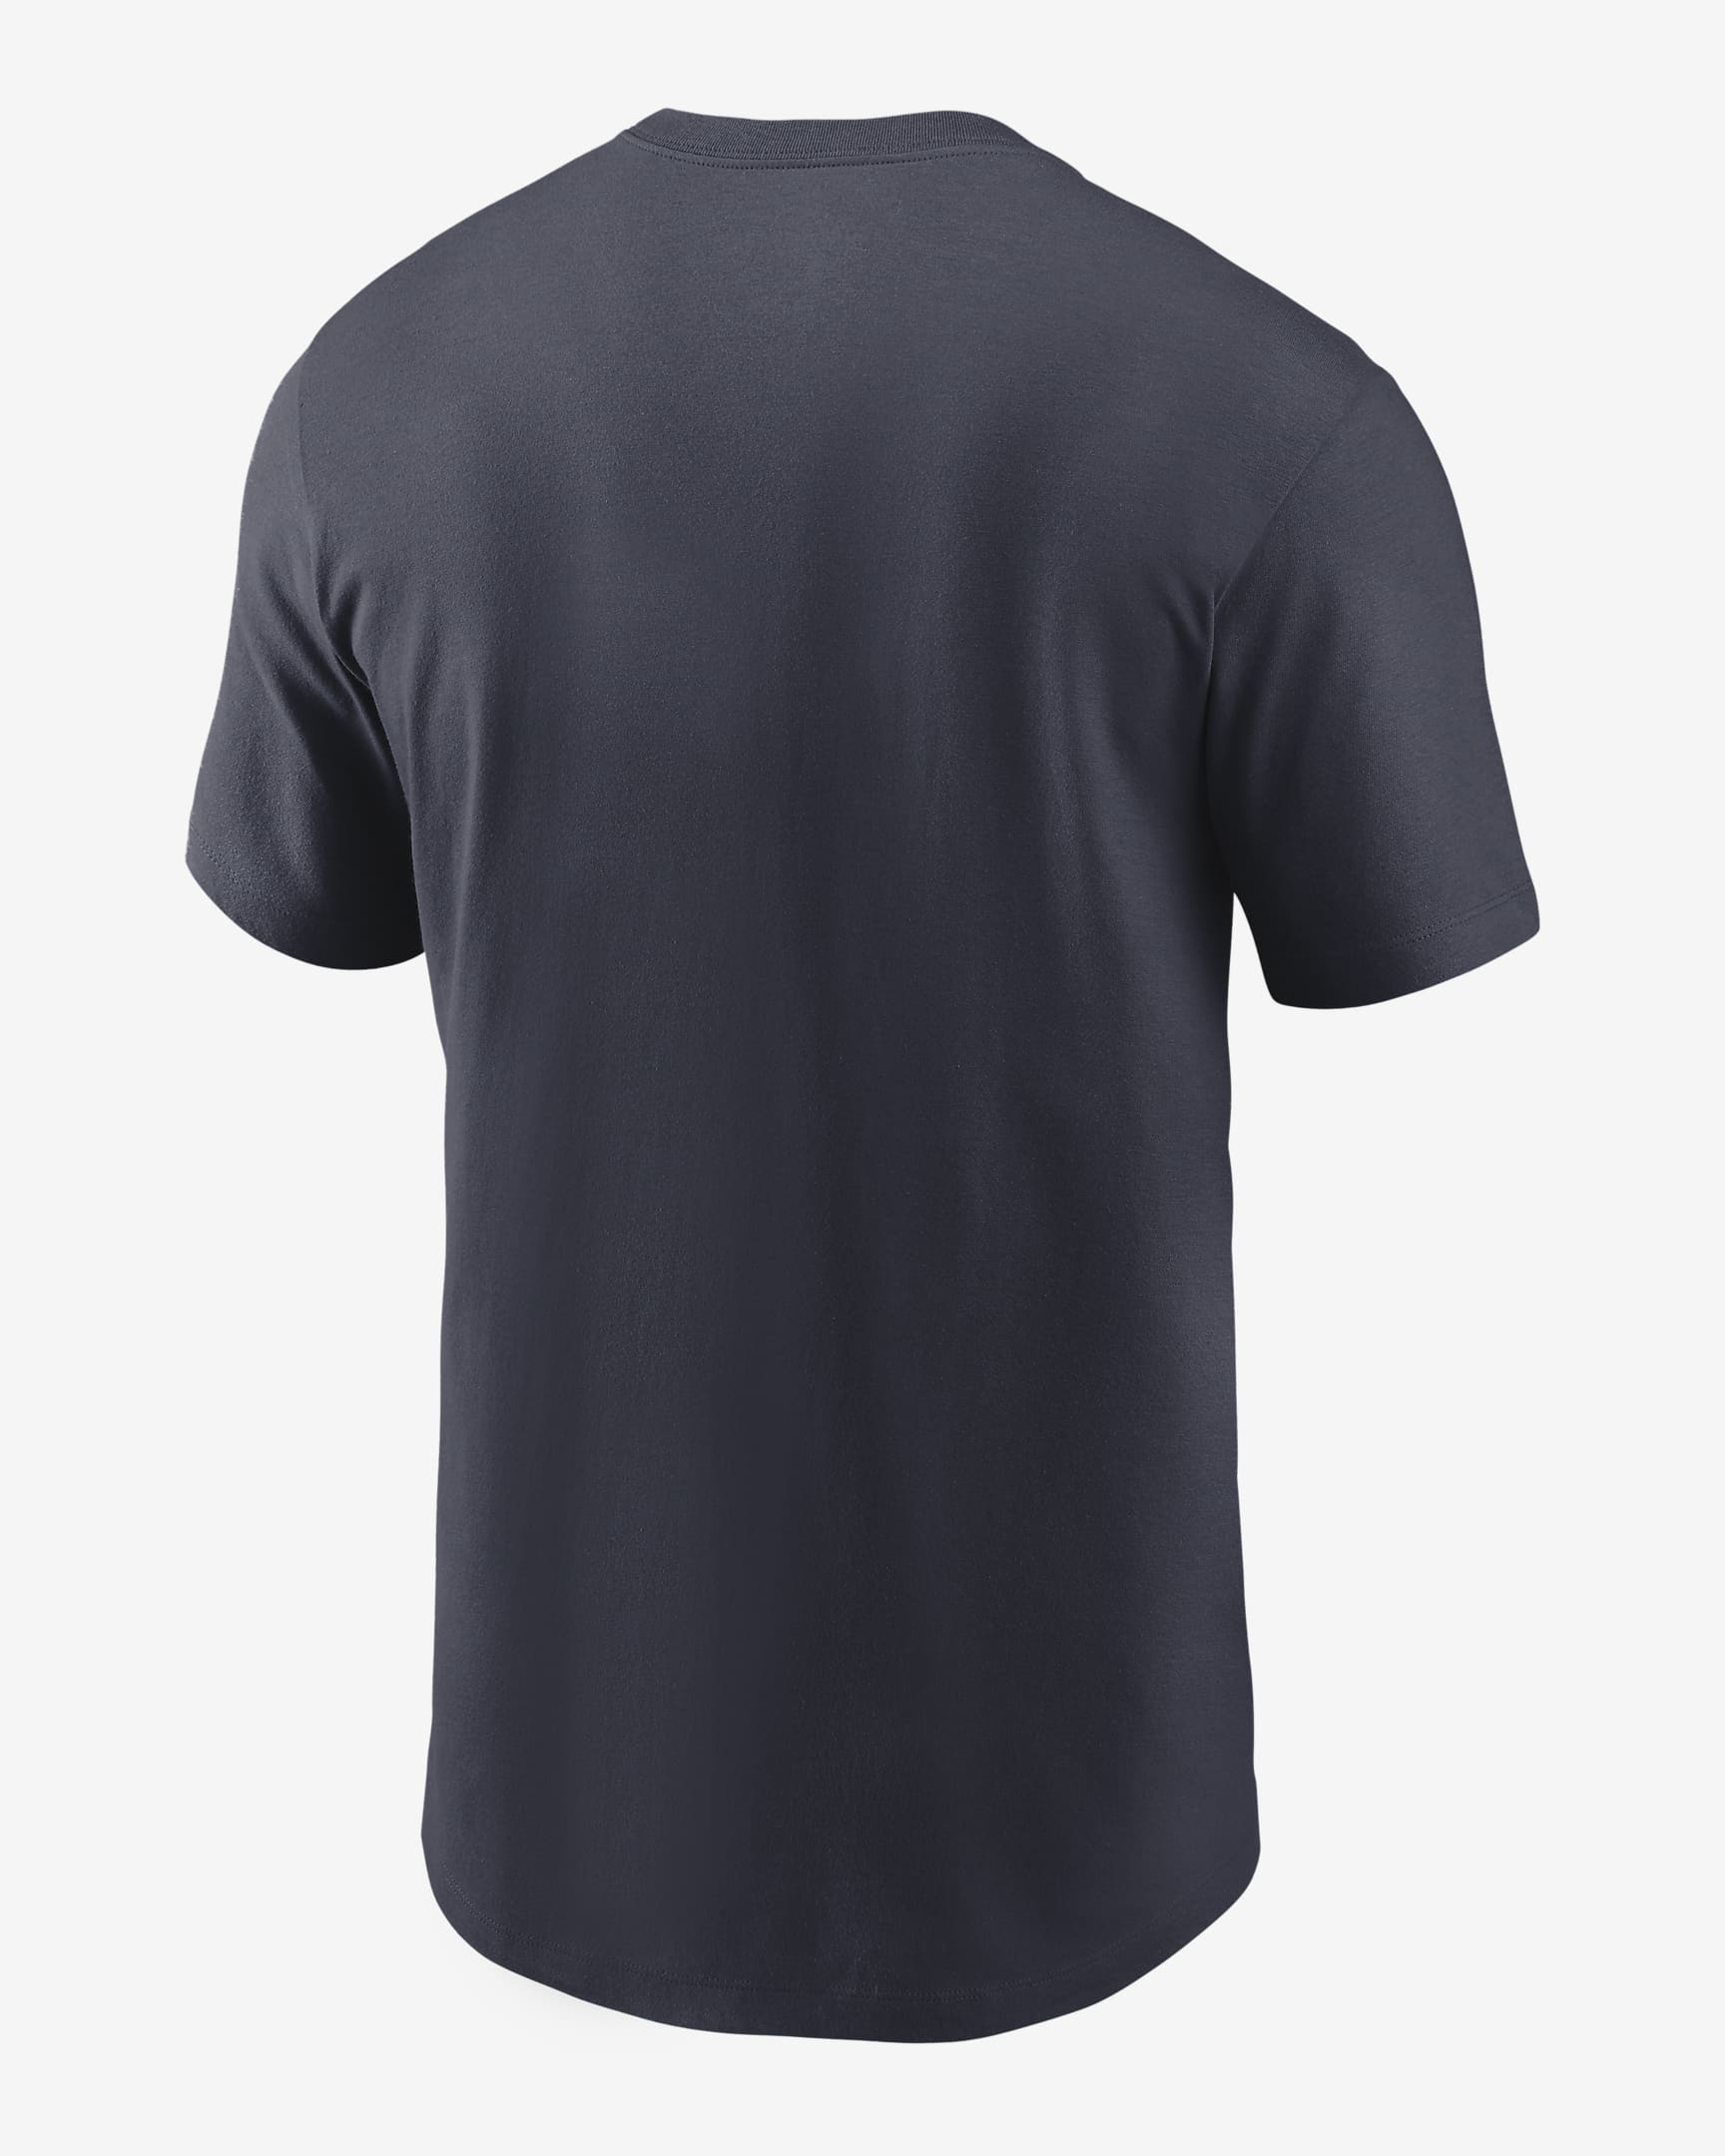 Nike (NFL Chicago Bears) Men's T-Shirt. Nike.com